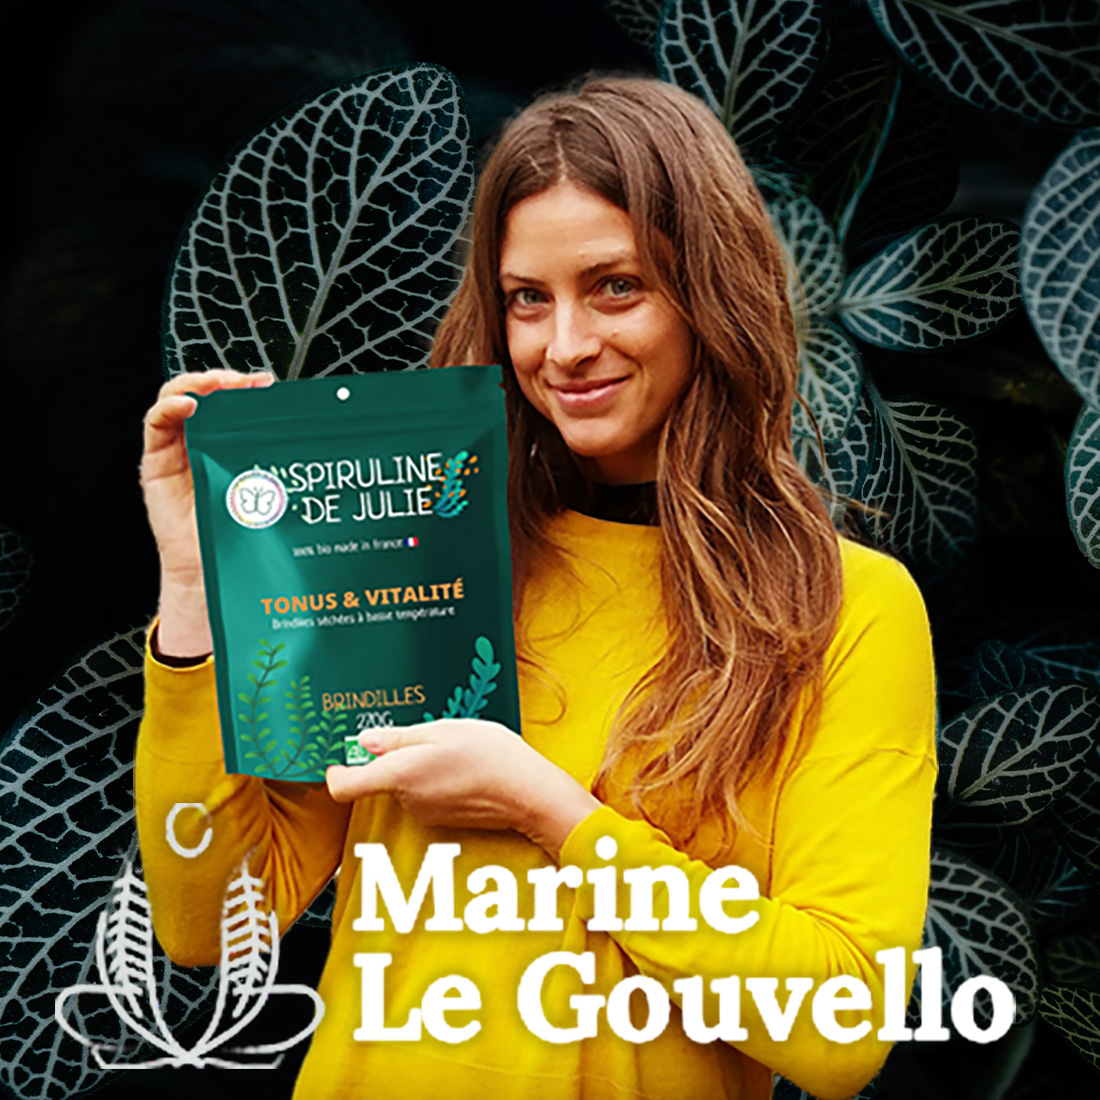 Marine Le Gouvello